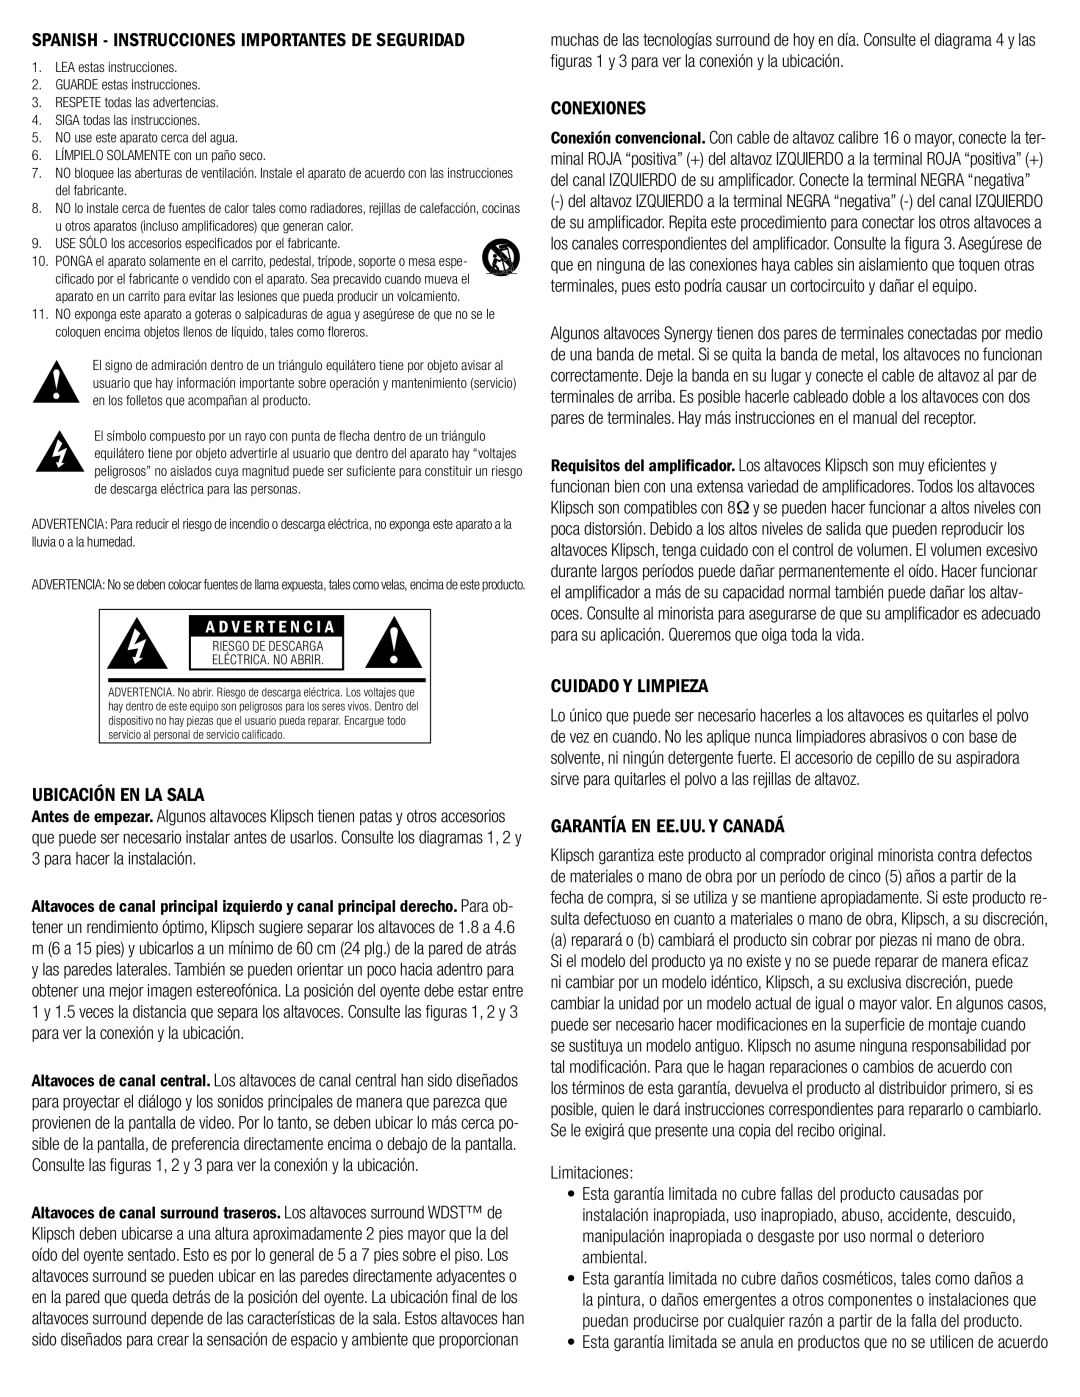 Klipsch SYNERGY-F-30 owner manual Ubicación En La Sala, Conexiones, Cuidado Y Limpieza, Garantía En Ee.Uu. Y Canadá 